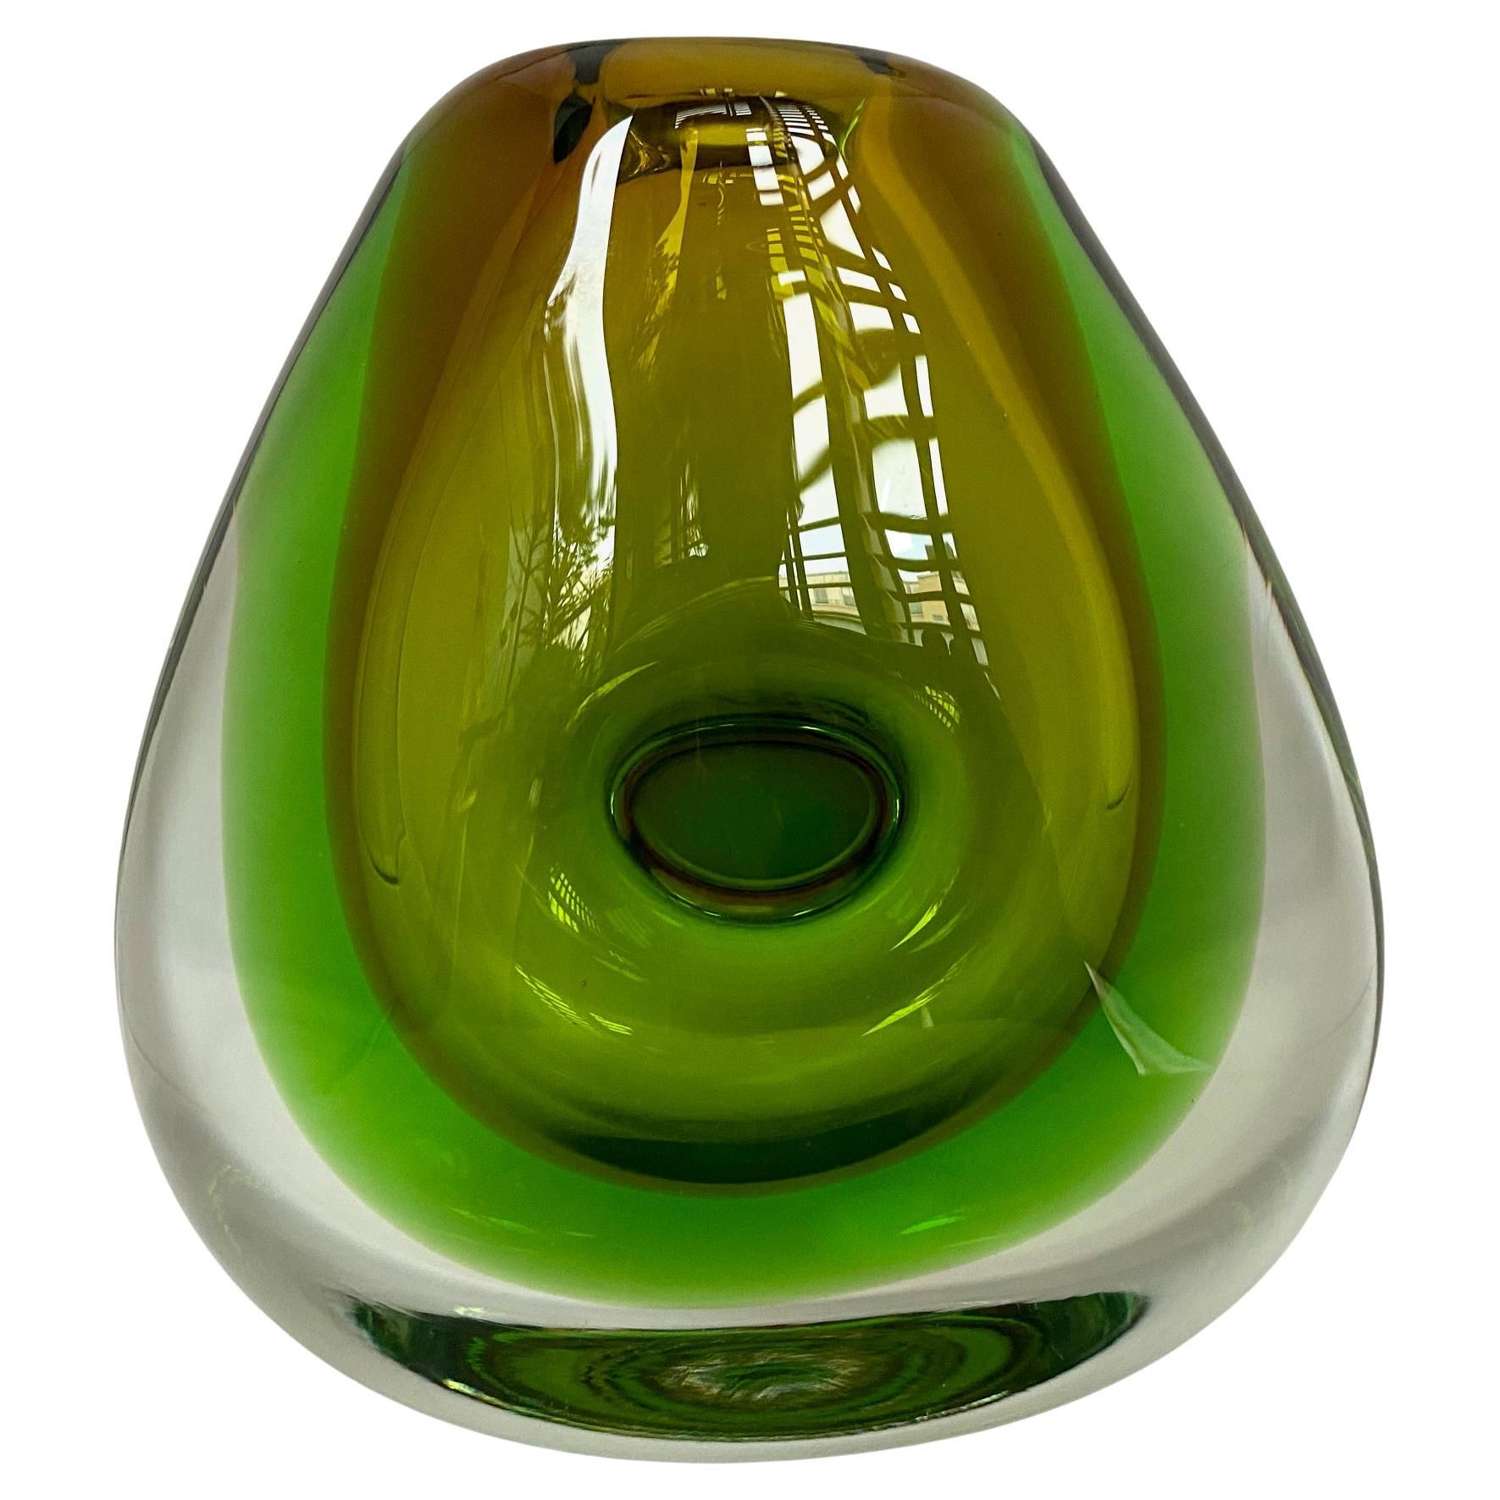 Heavy 1960's Green Bohemian Art Glass Vase, by Vladimir Mika for Moser